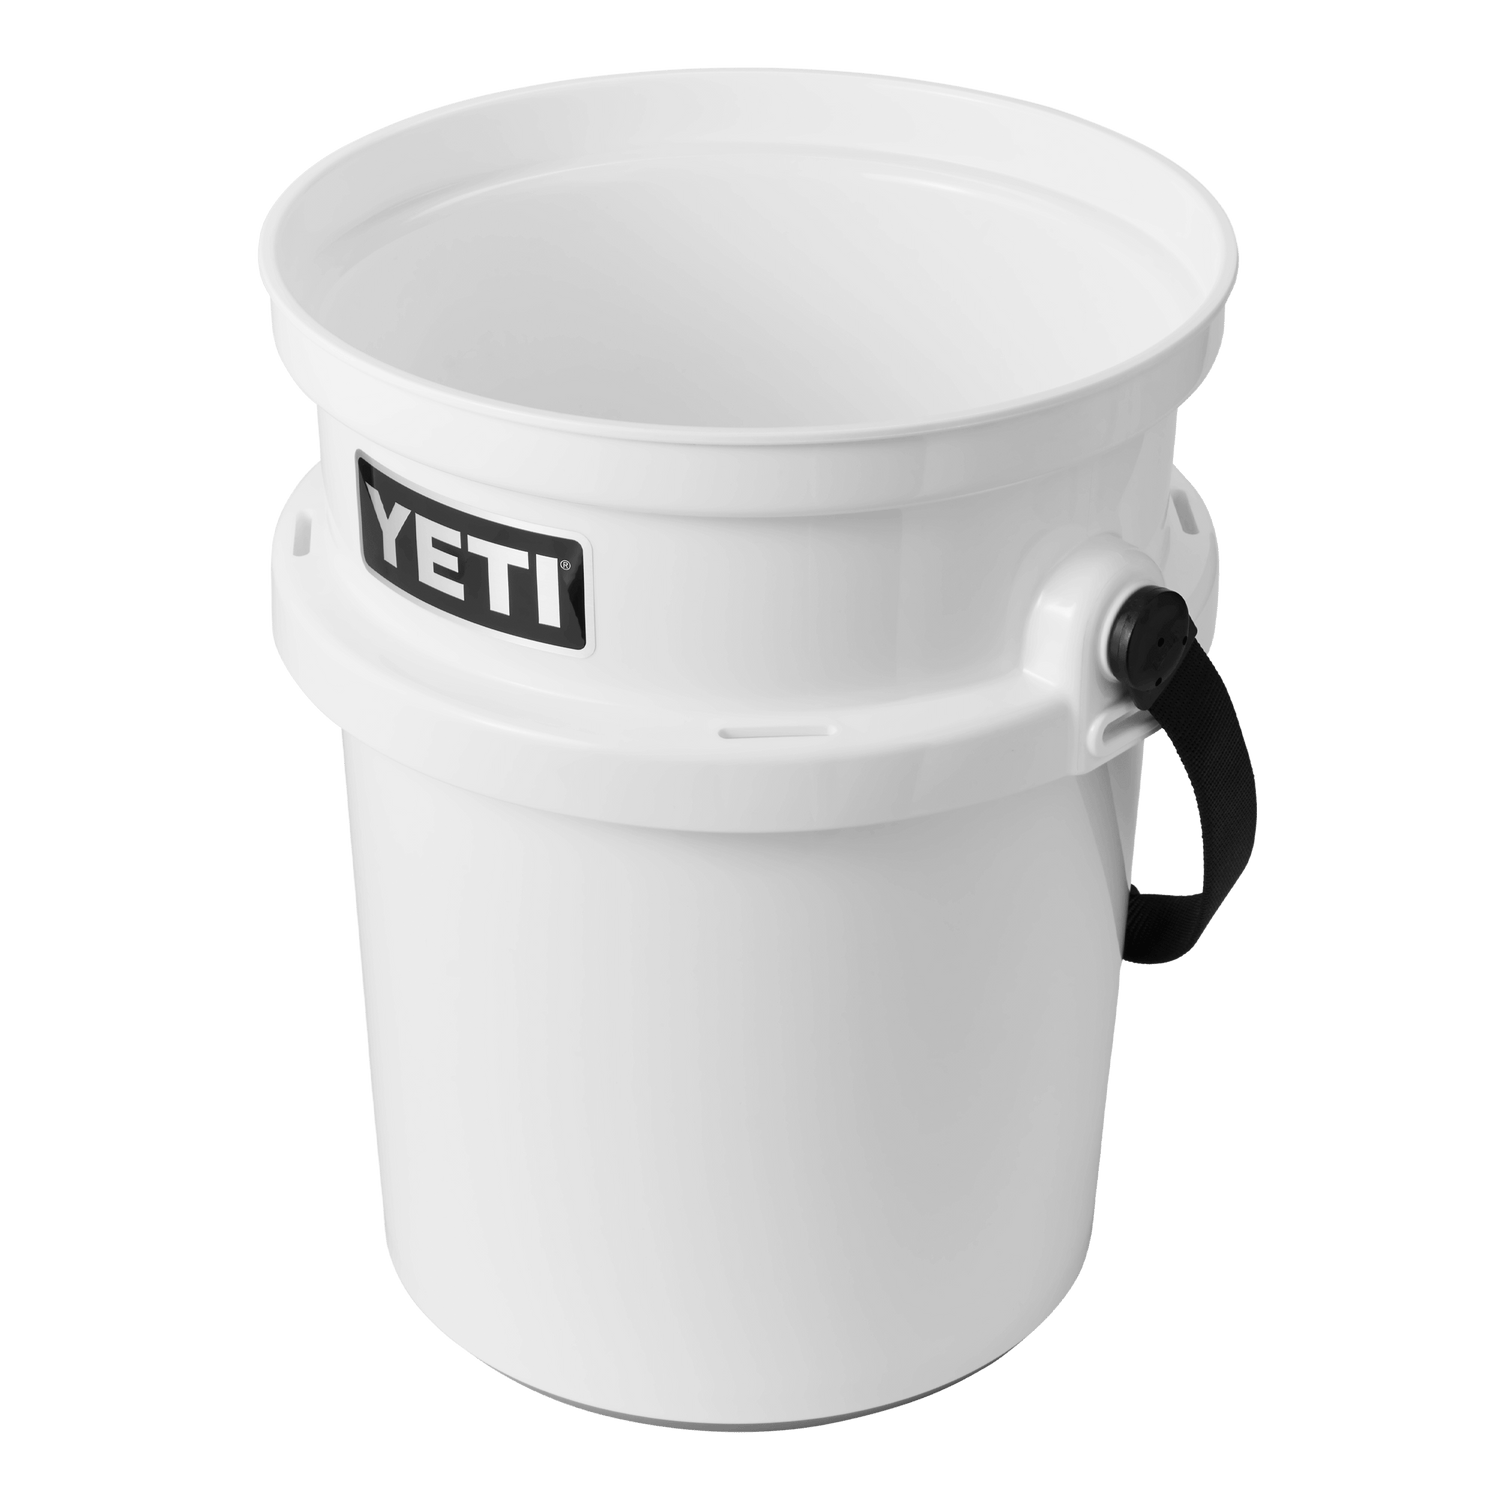 YETI LoadOut Bucket Accessories – YETI New Zealand